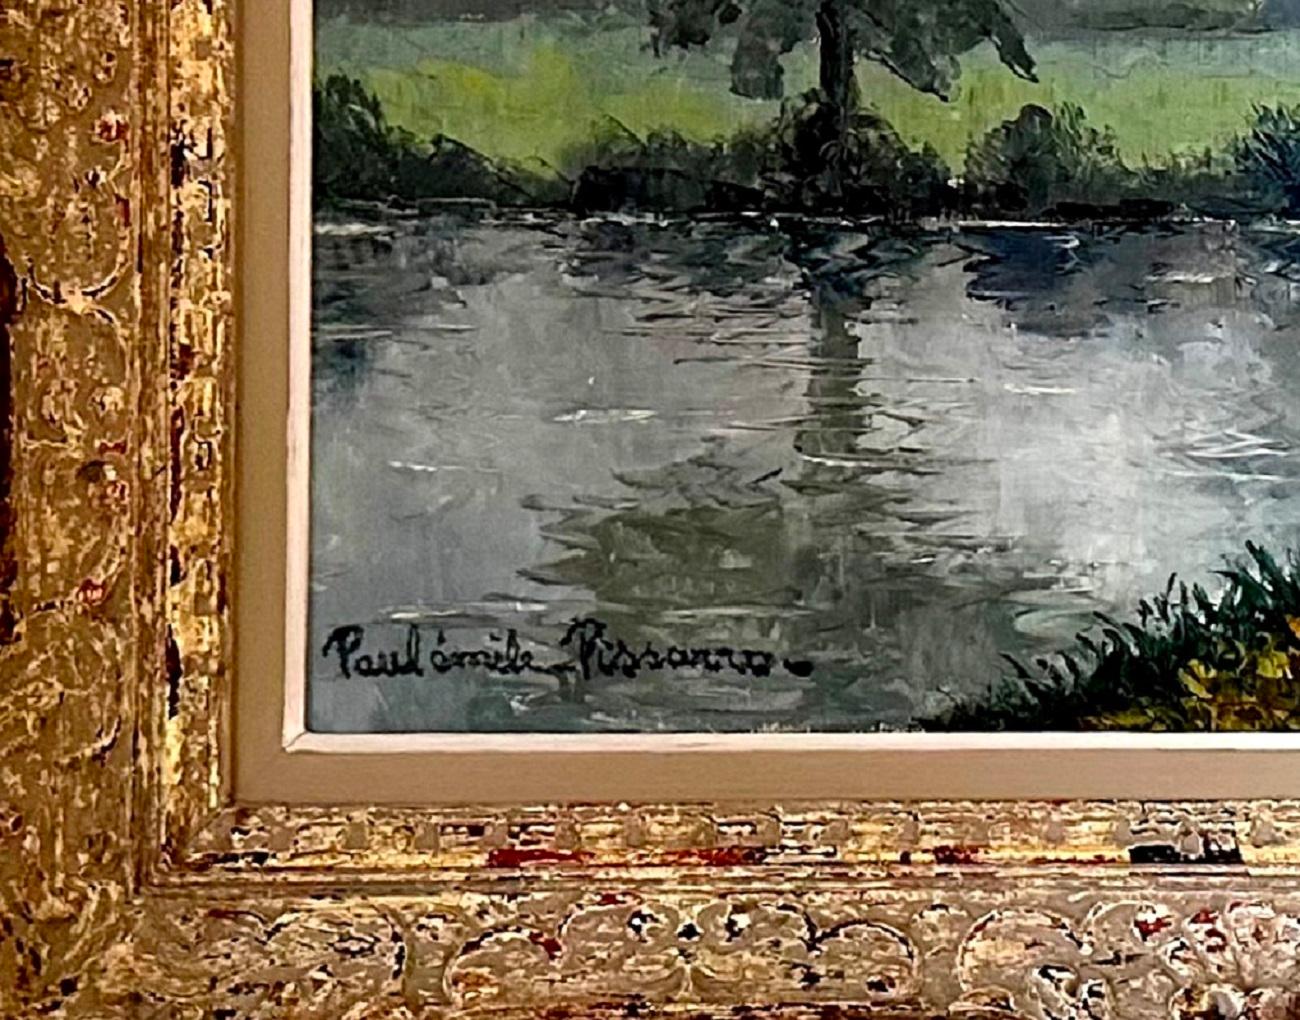  Novembre au bord de l’eau  - Brown Landscape Painting by Paul Emile Pissarro